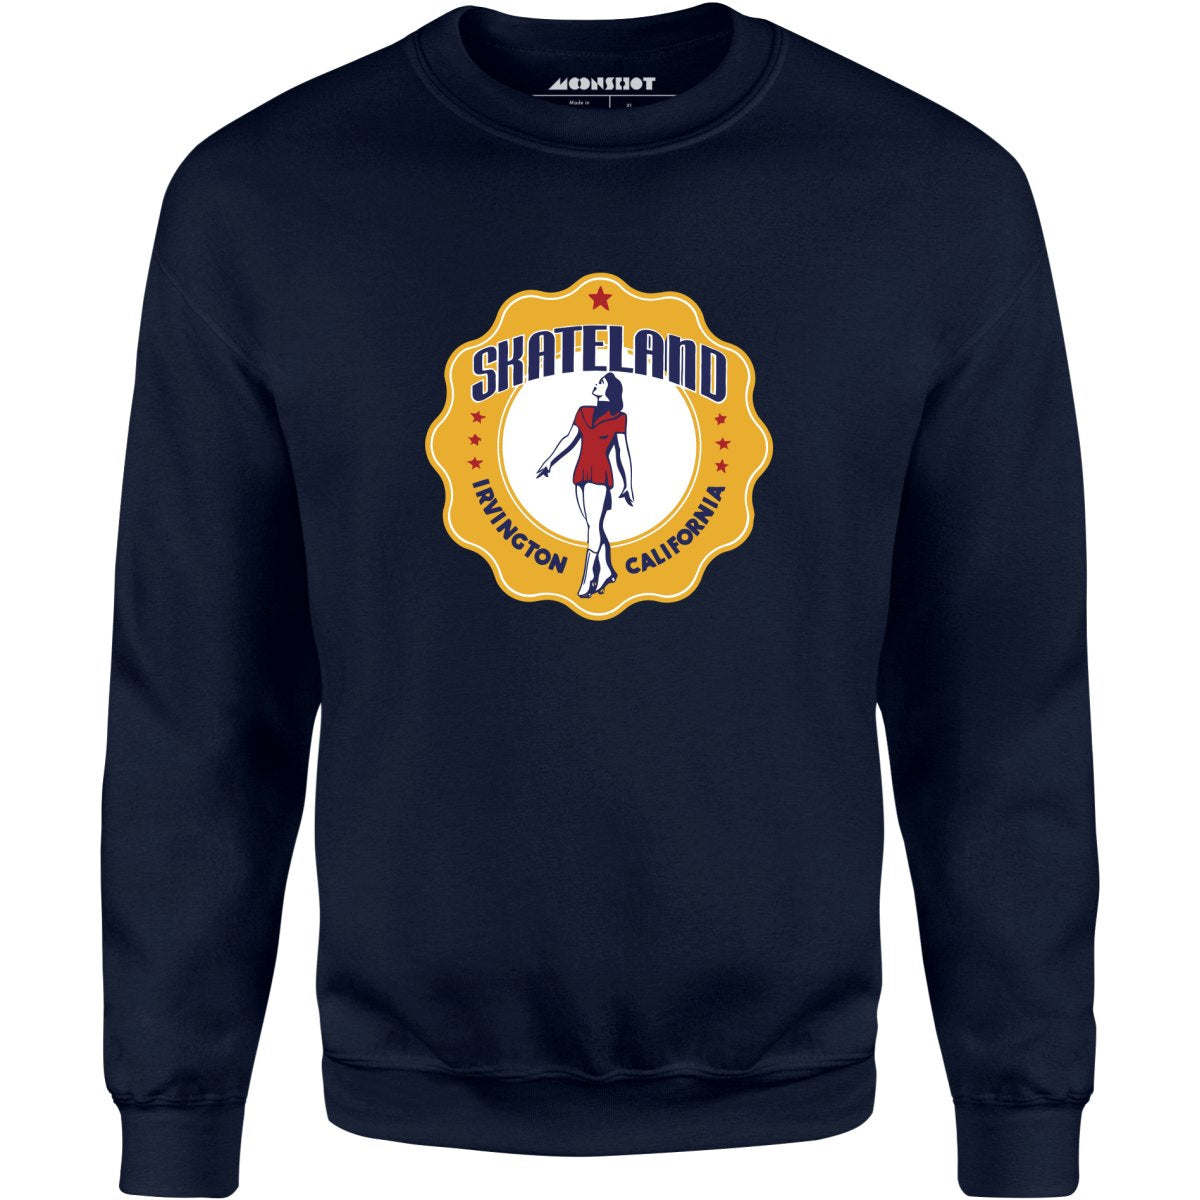 Skateland - Irvington, CA - Vintage Roller Rink - Unisex Sweatshirt